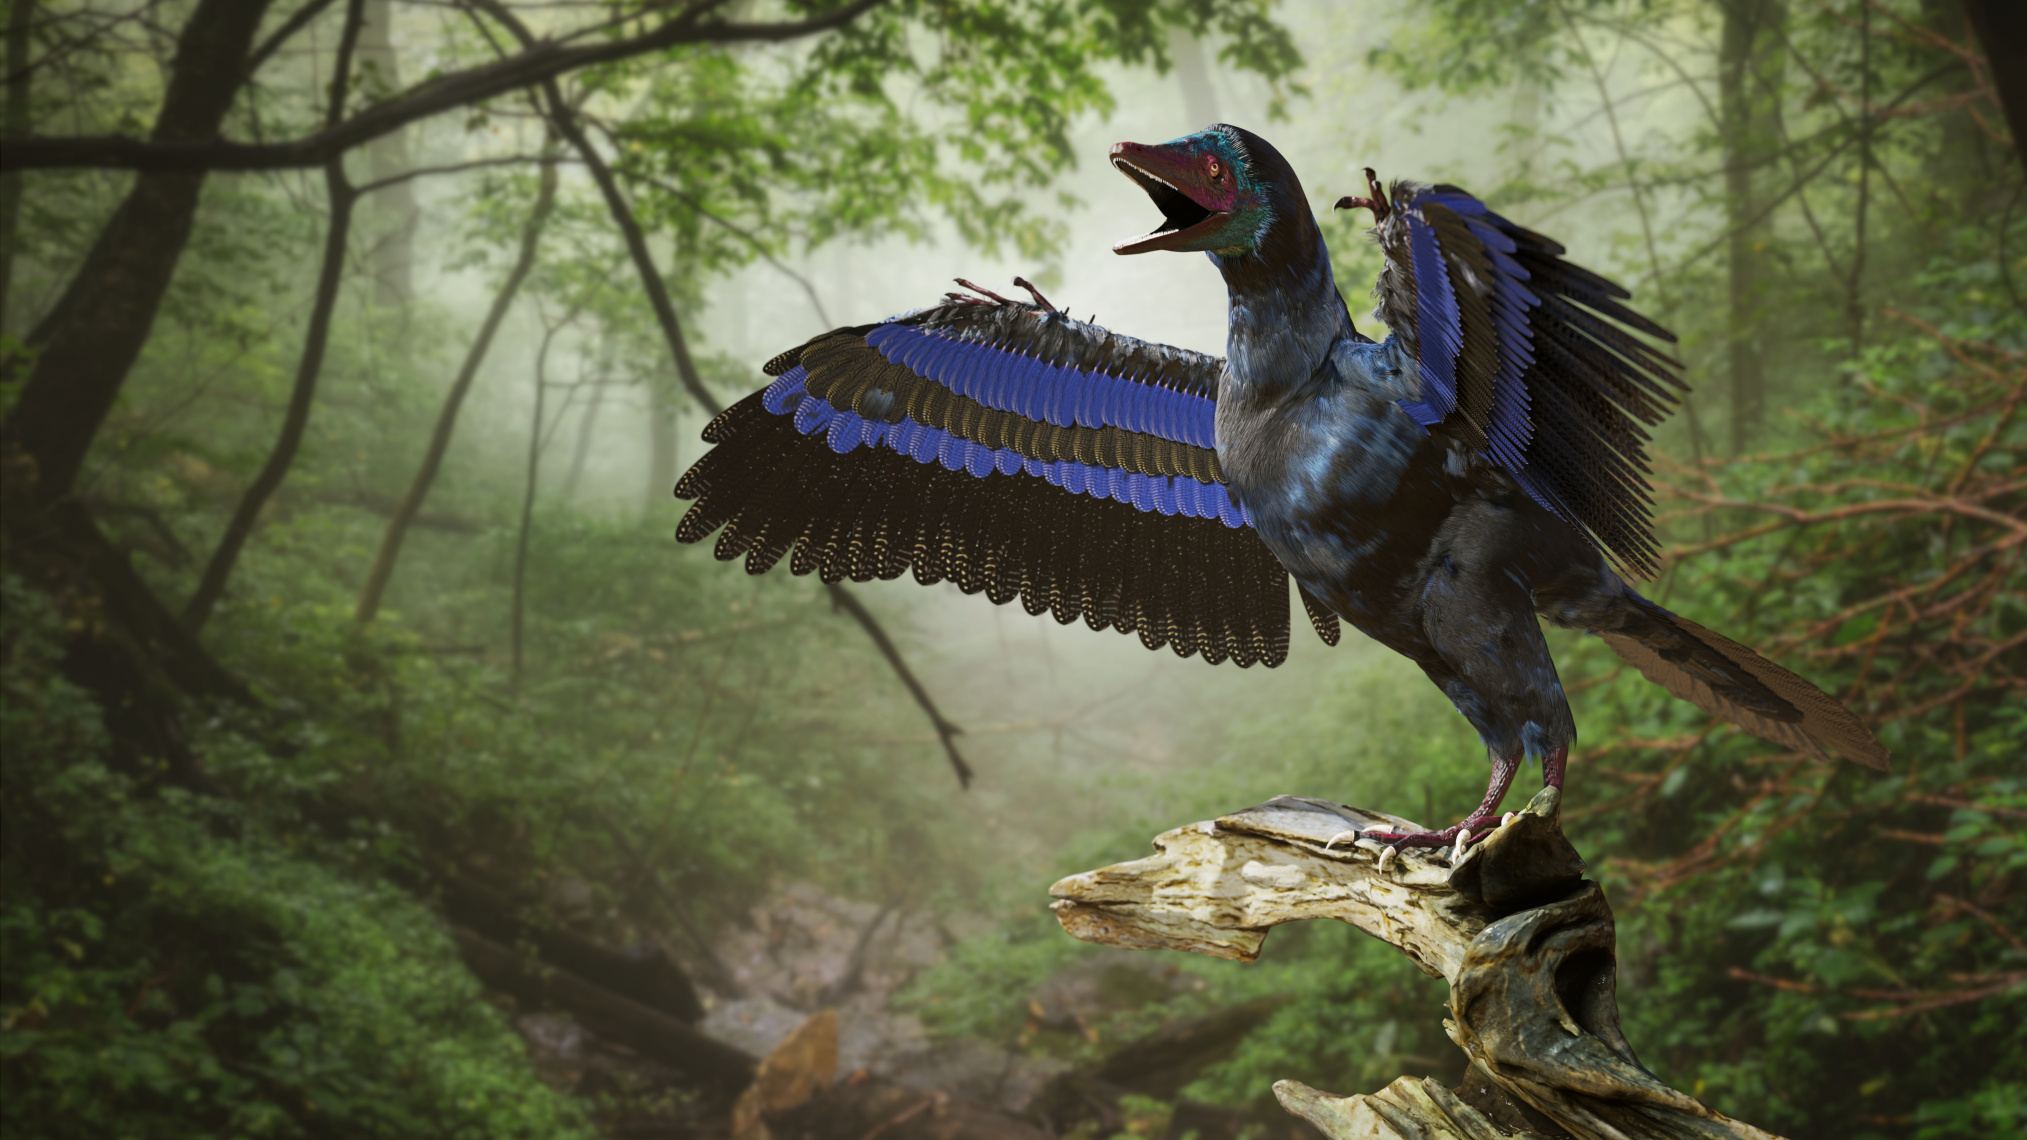 Archeopteryx, dinosaur ngati mbalame kuchokera ku Late Jurassic zaka pafupifupi 150 miliyoni zapitazo (3d rendering)